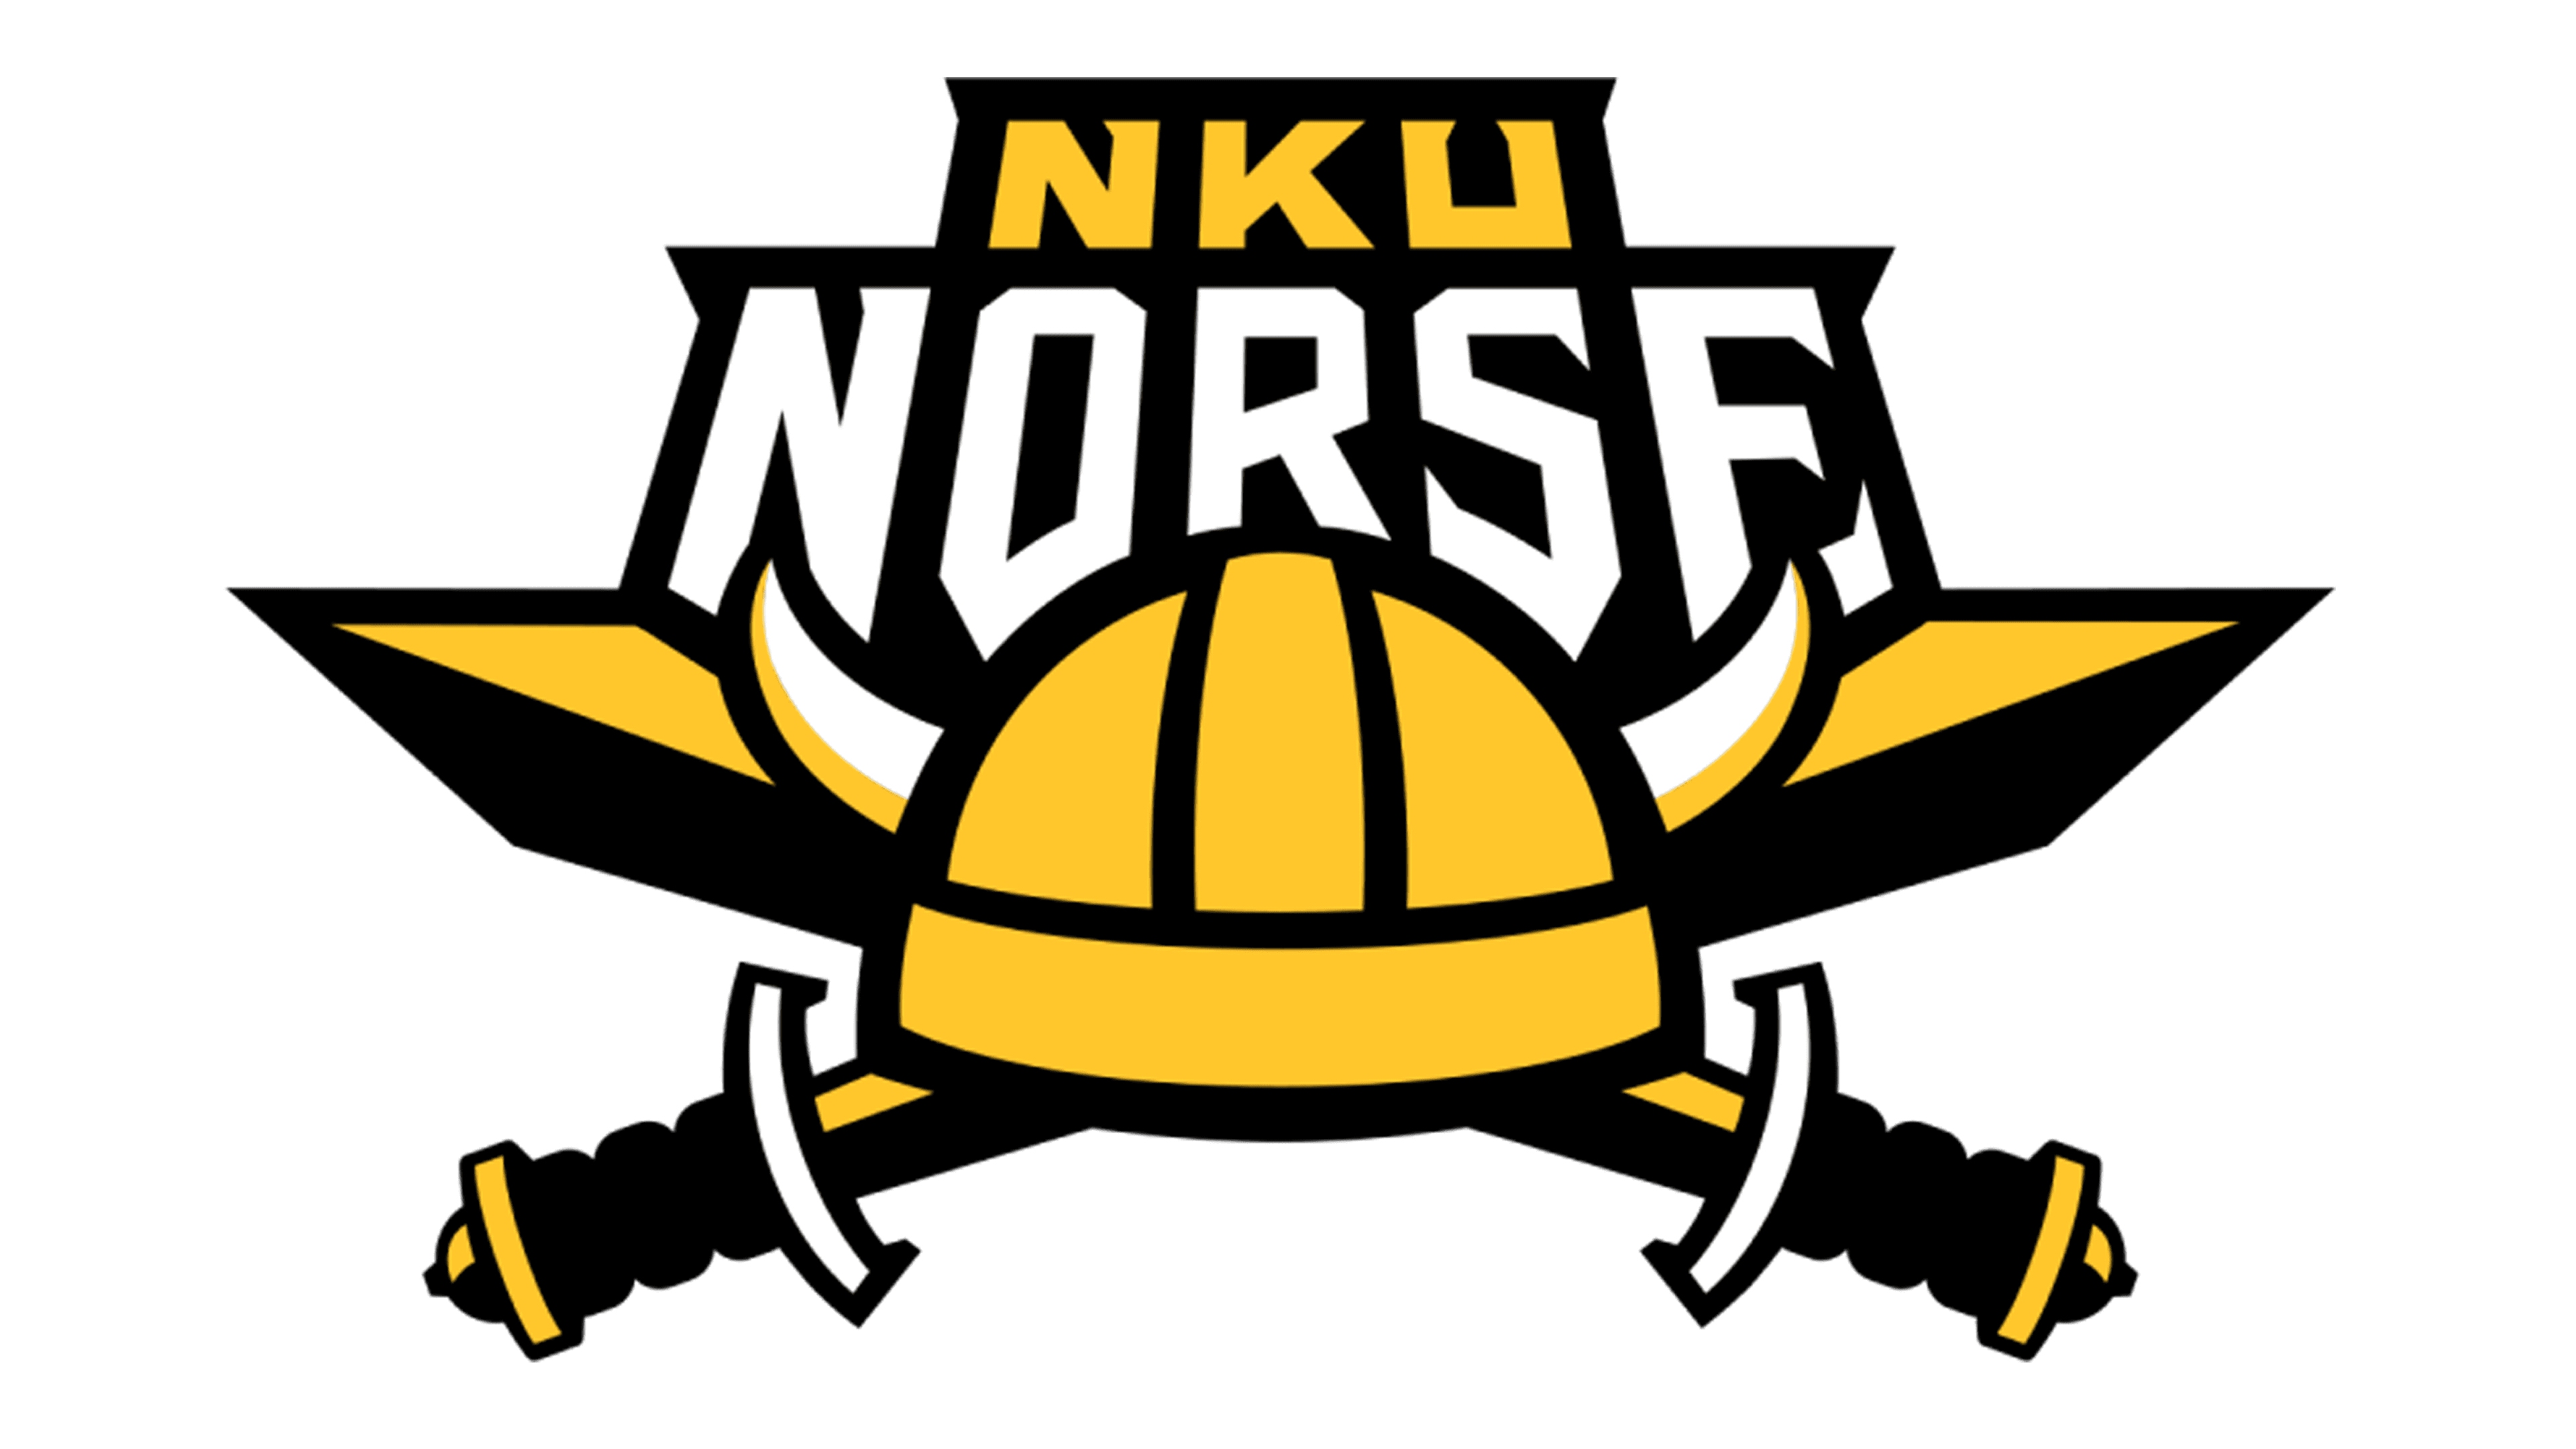 Northern-Kentucky-Norse-logo